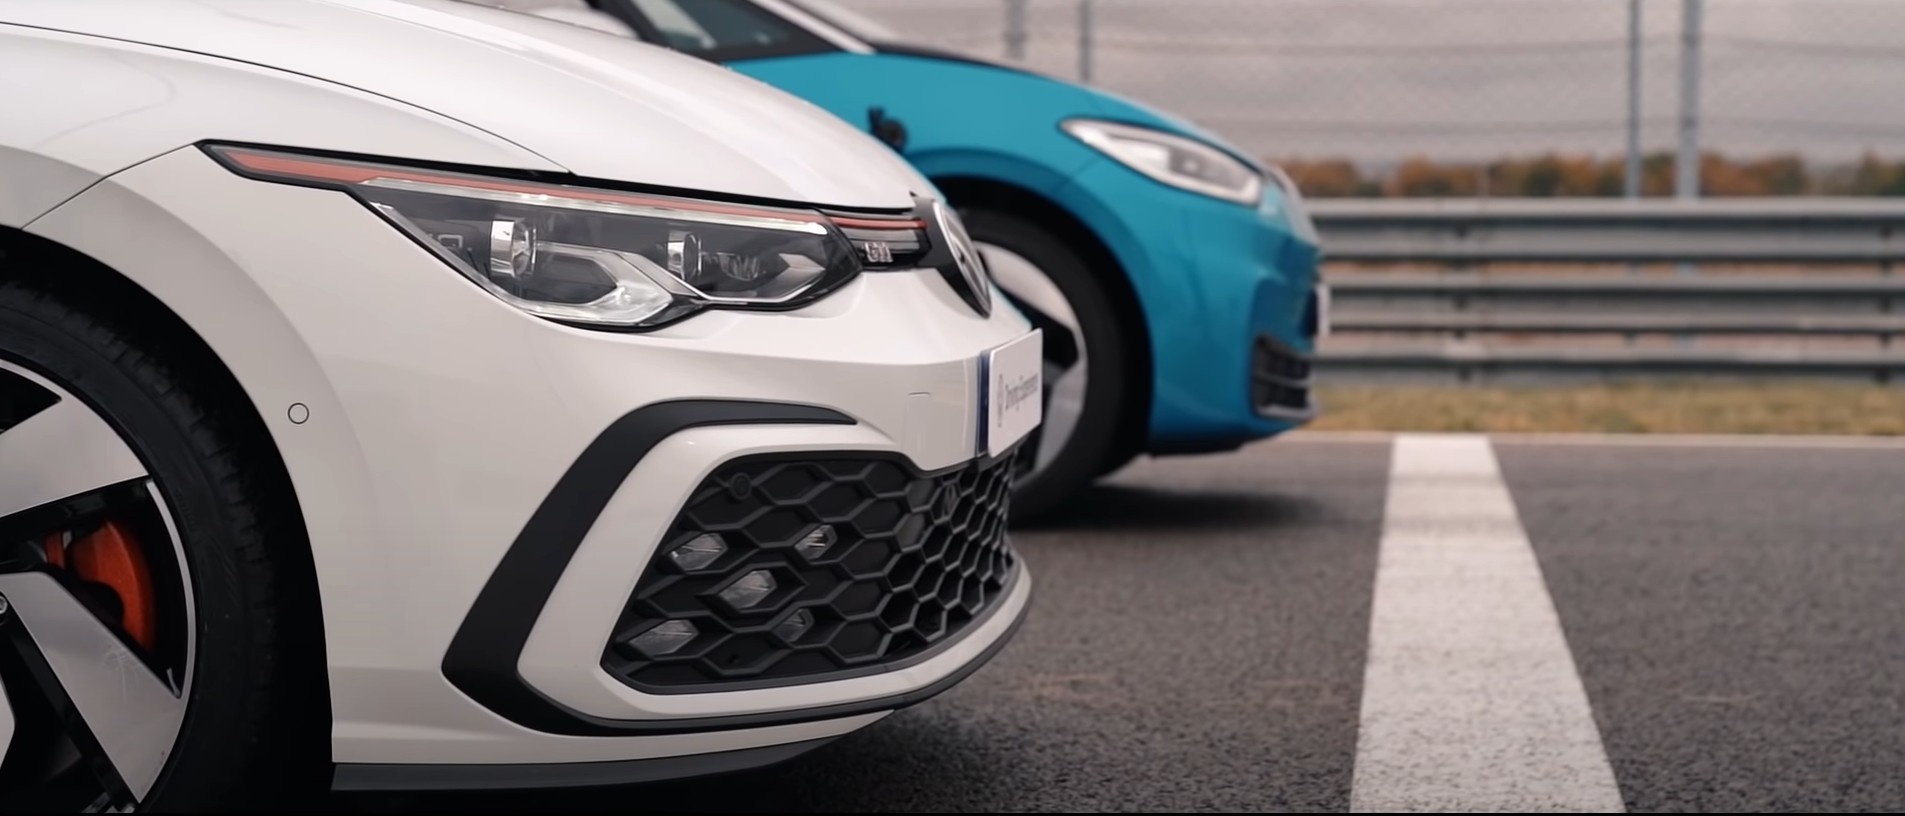 El Volkswagen Golf GTI se enfrenta al ID.3 en una carrera de aceleración ¿Quién ganará?